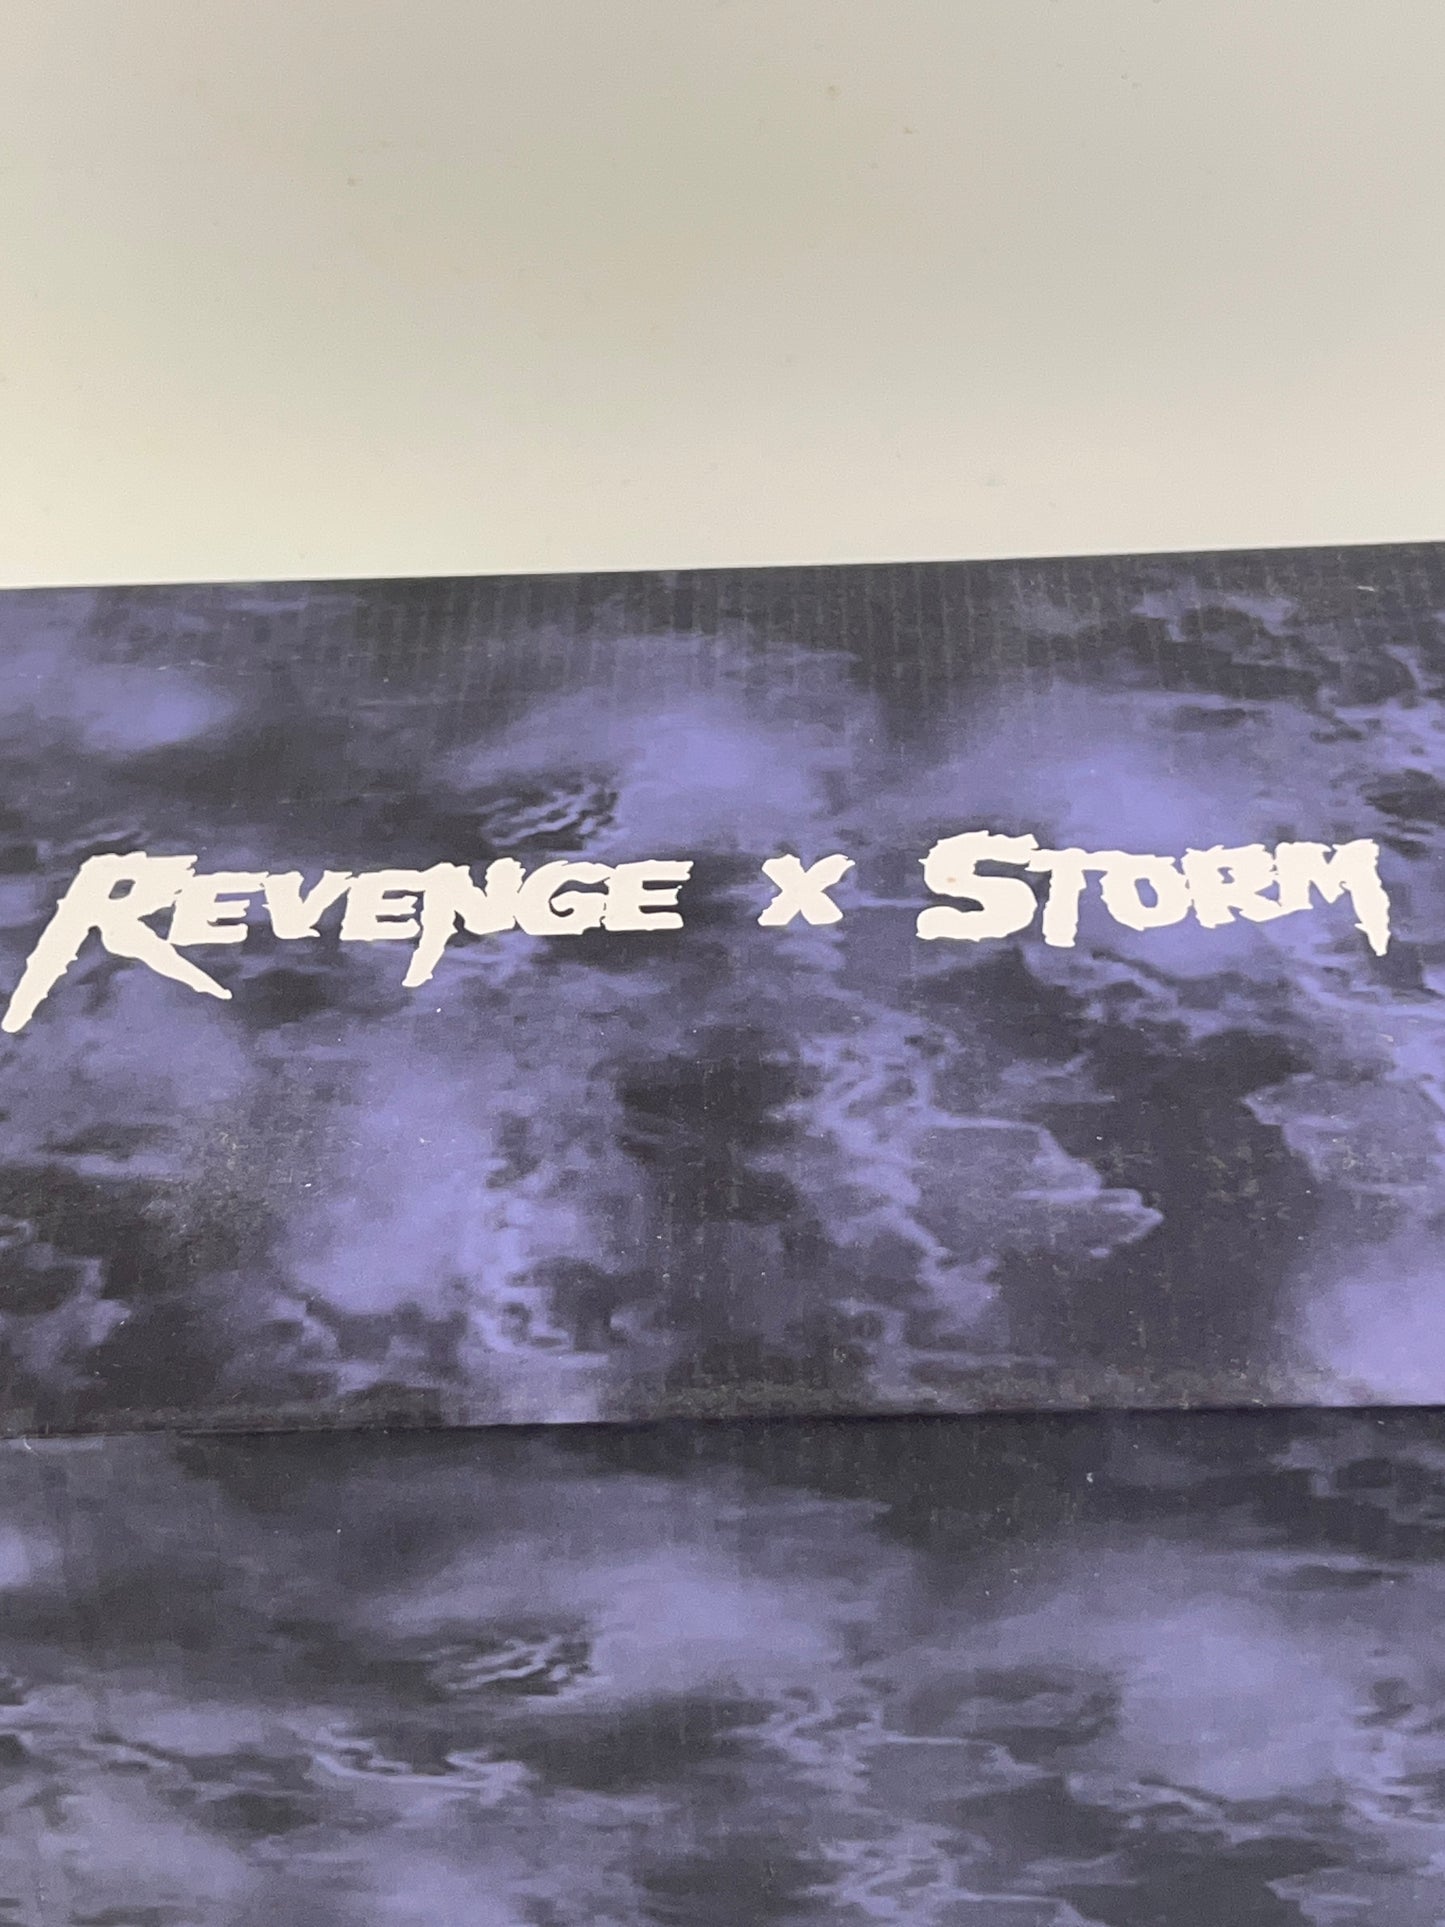 Revenge x Storm Size 8 Vol. 2 Black/ White 100% Authentic Newest Release NIB